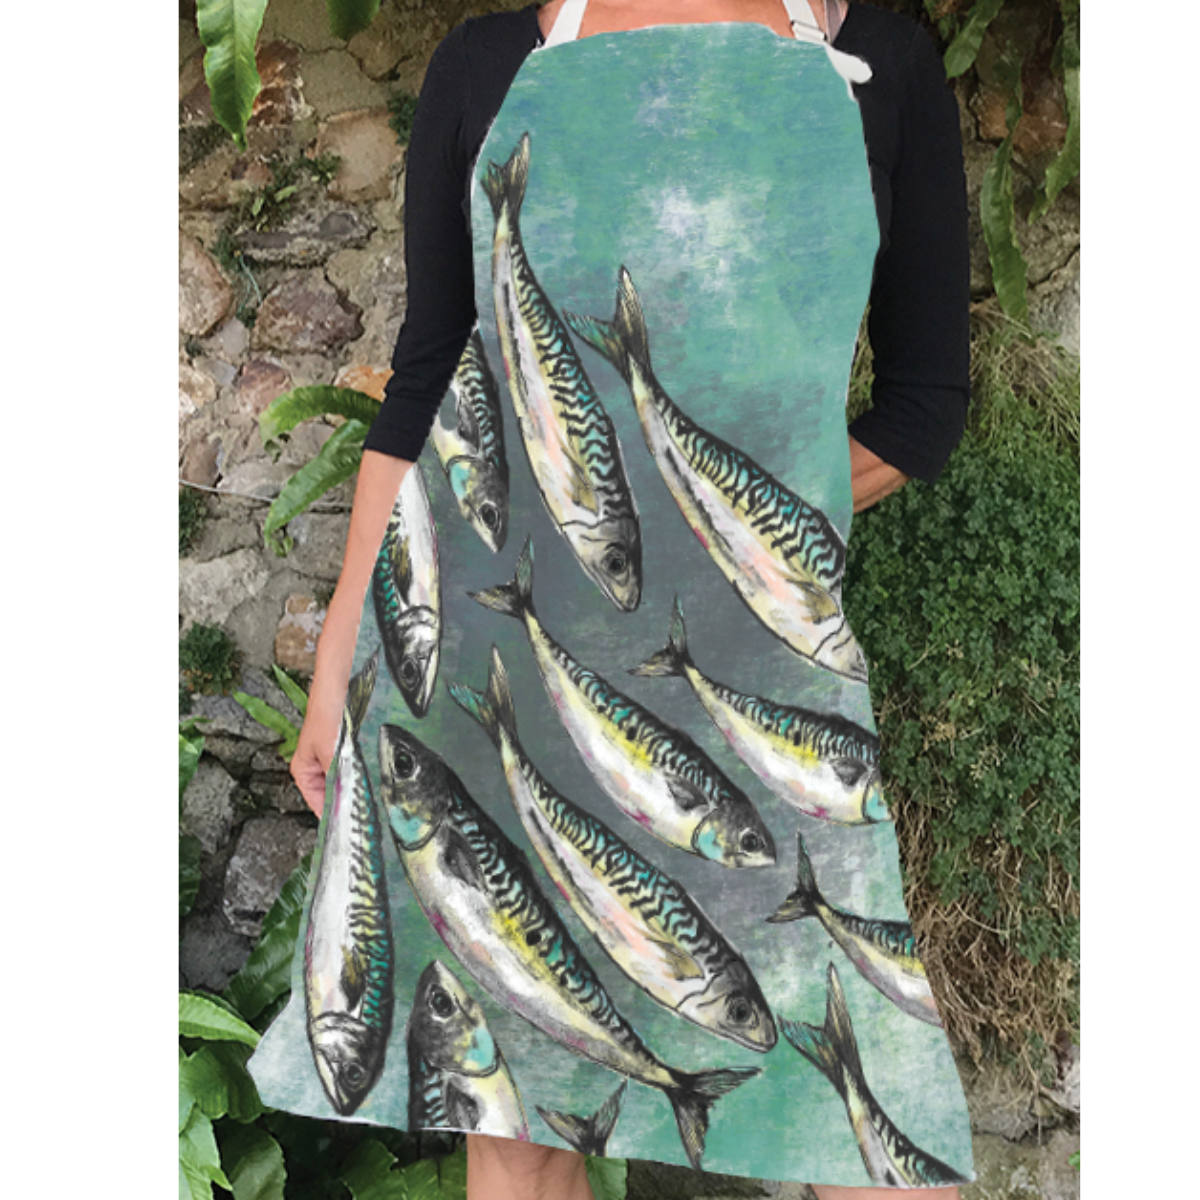 Mackerelk shoal design apron